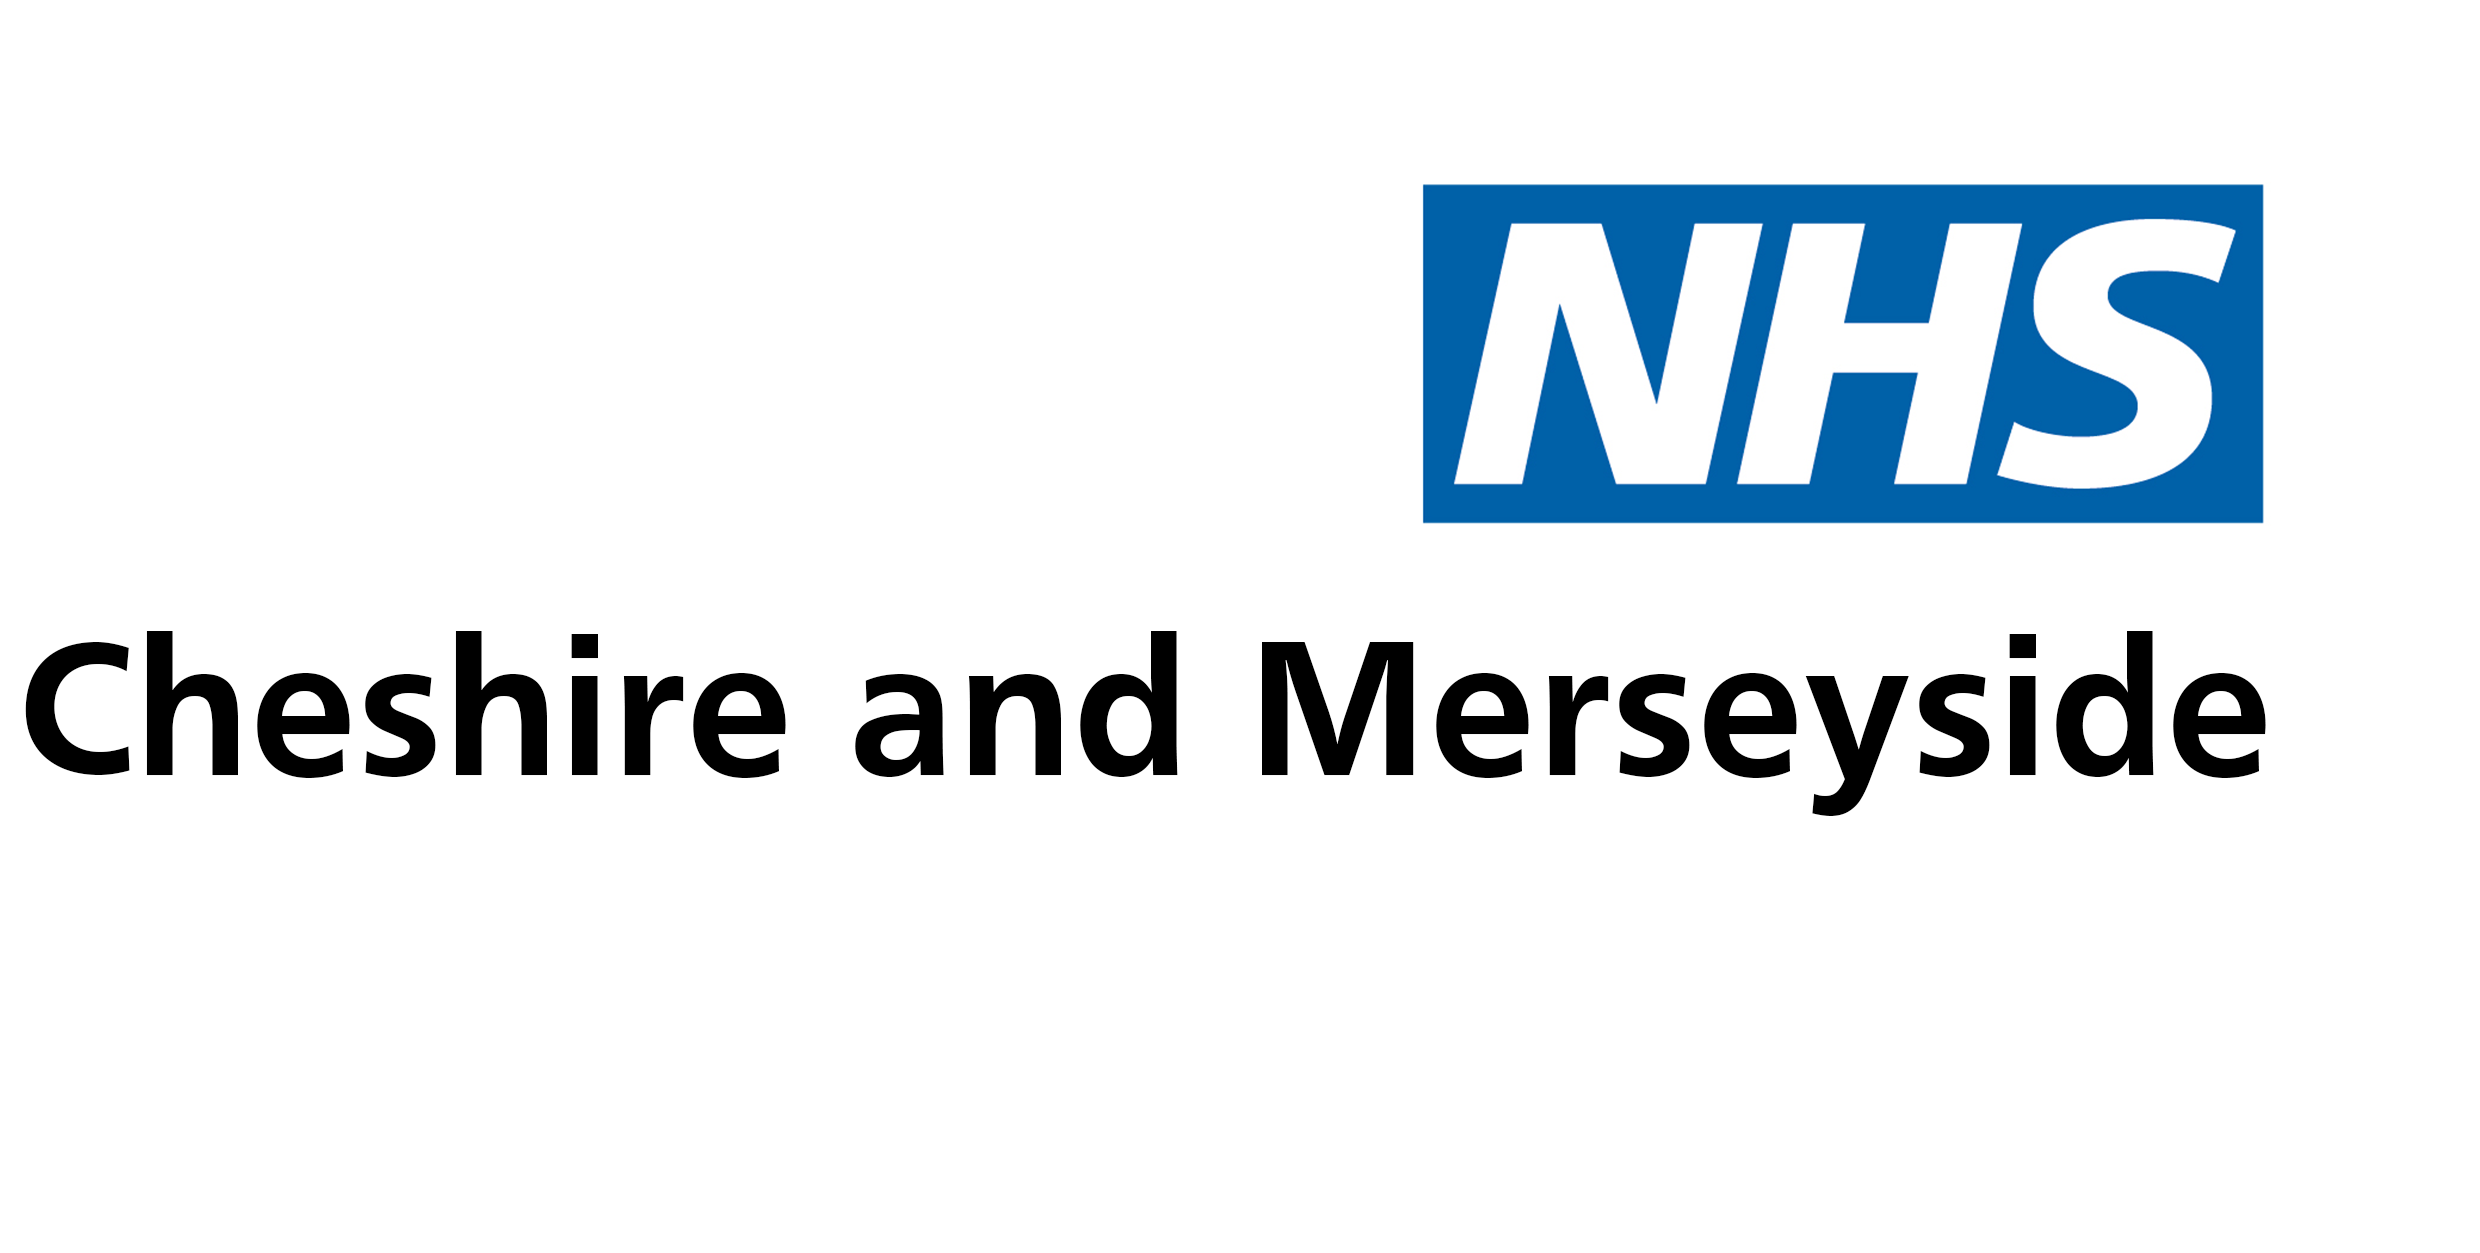 NHS Cheshire & Merseyside (ICS)